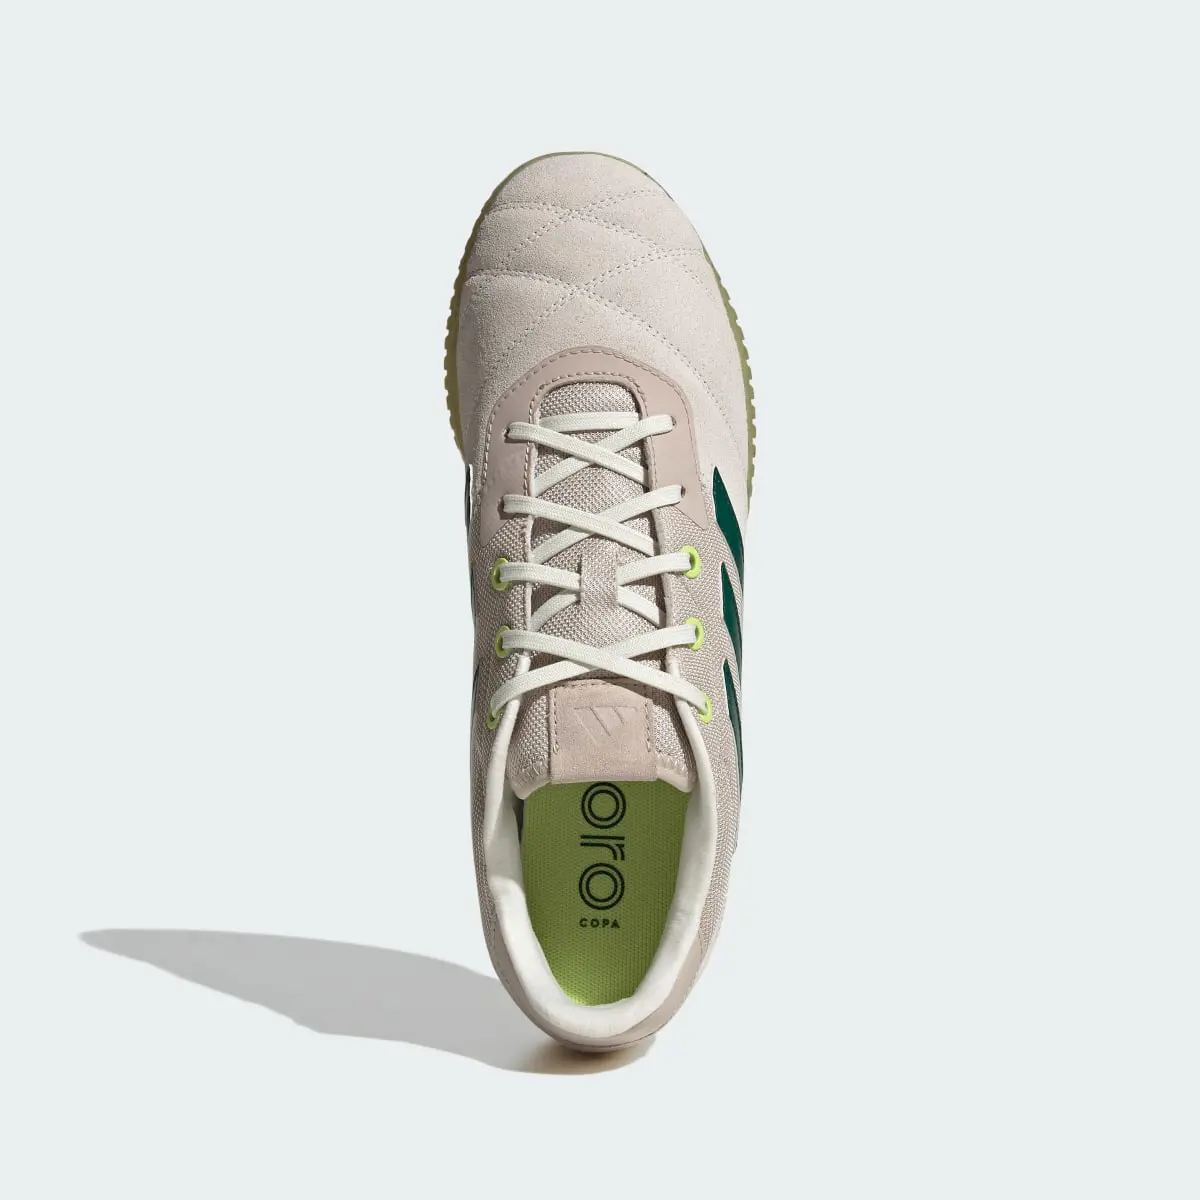 Adidas Copa Gloro Indoor Boots. 3